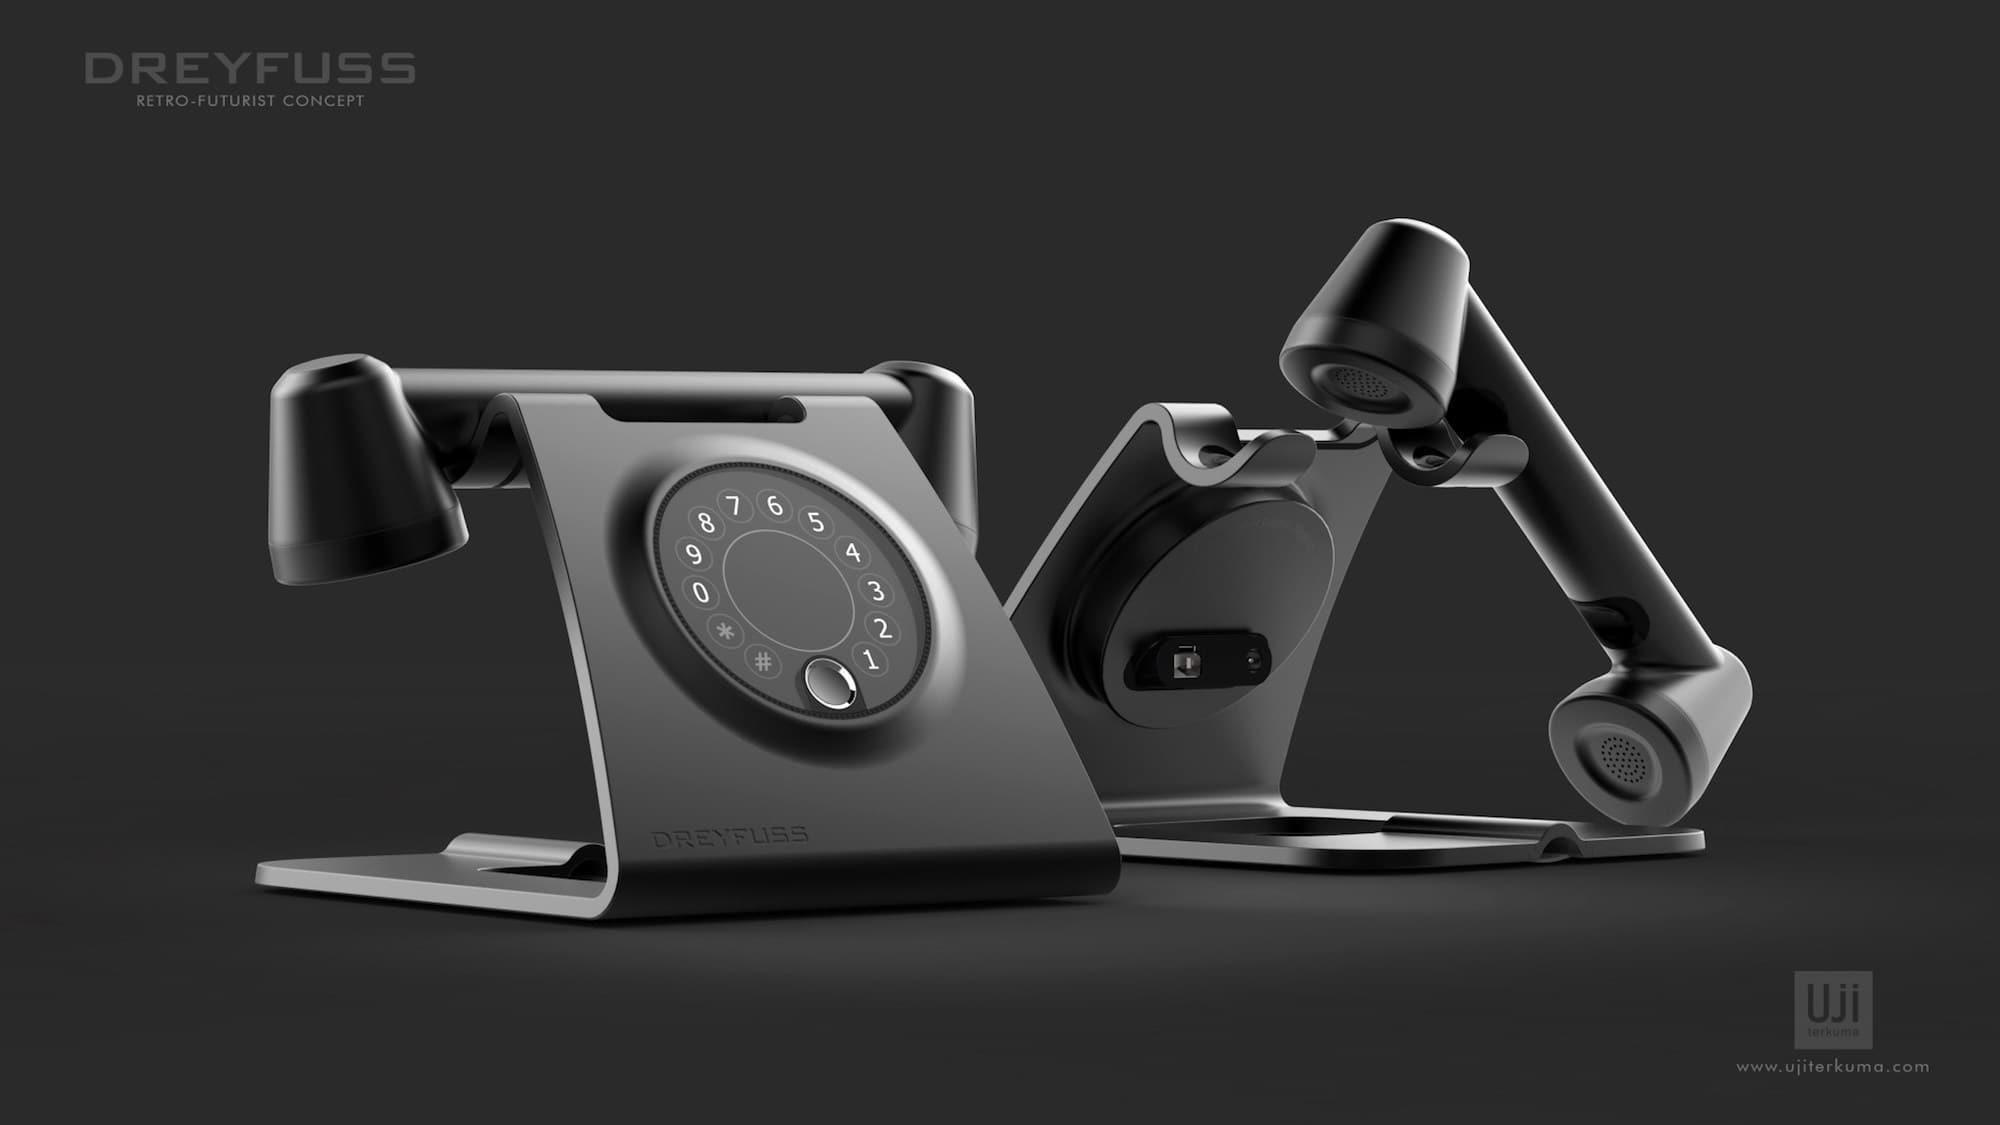 Dreyfuss phone concept by Uji Terkuma featured